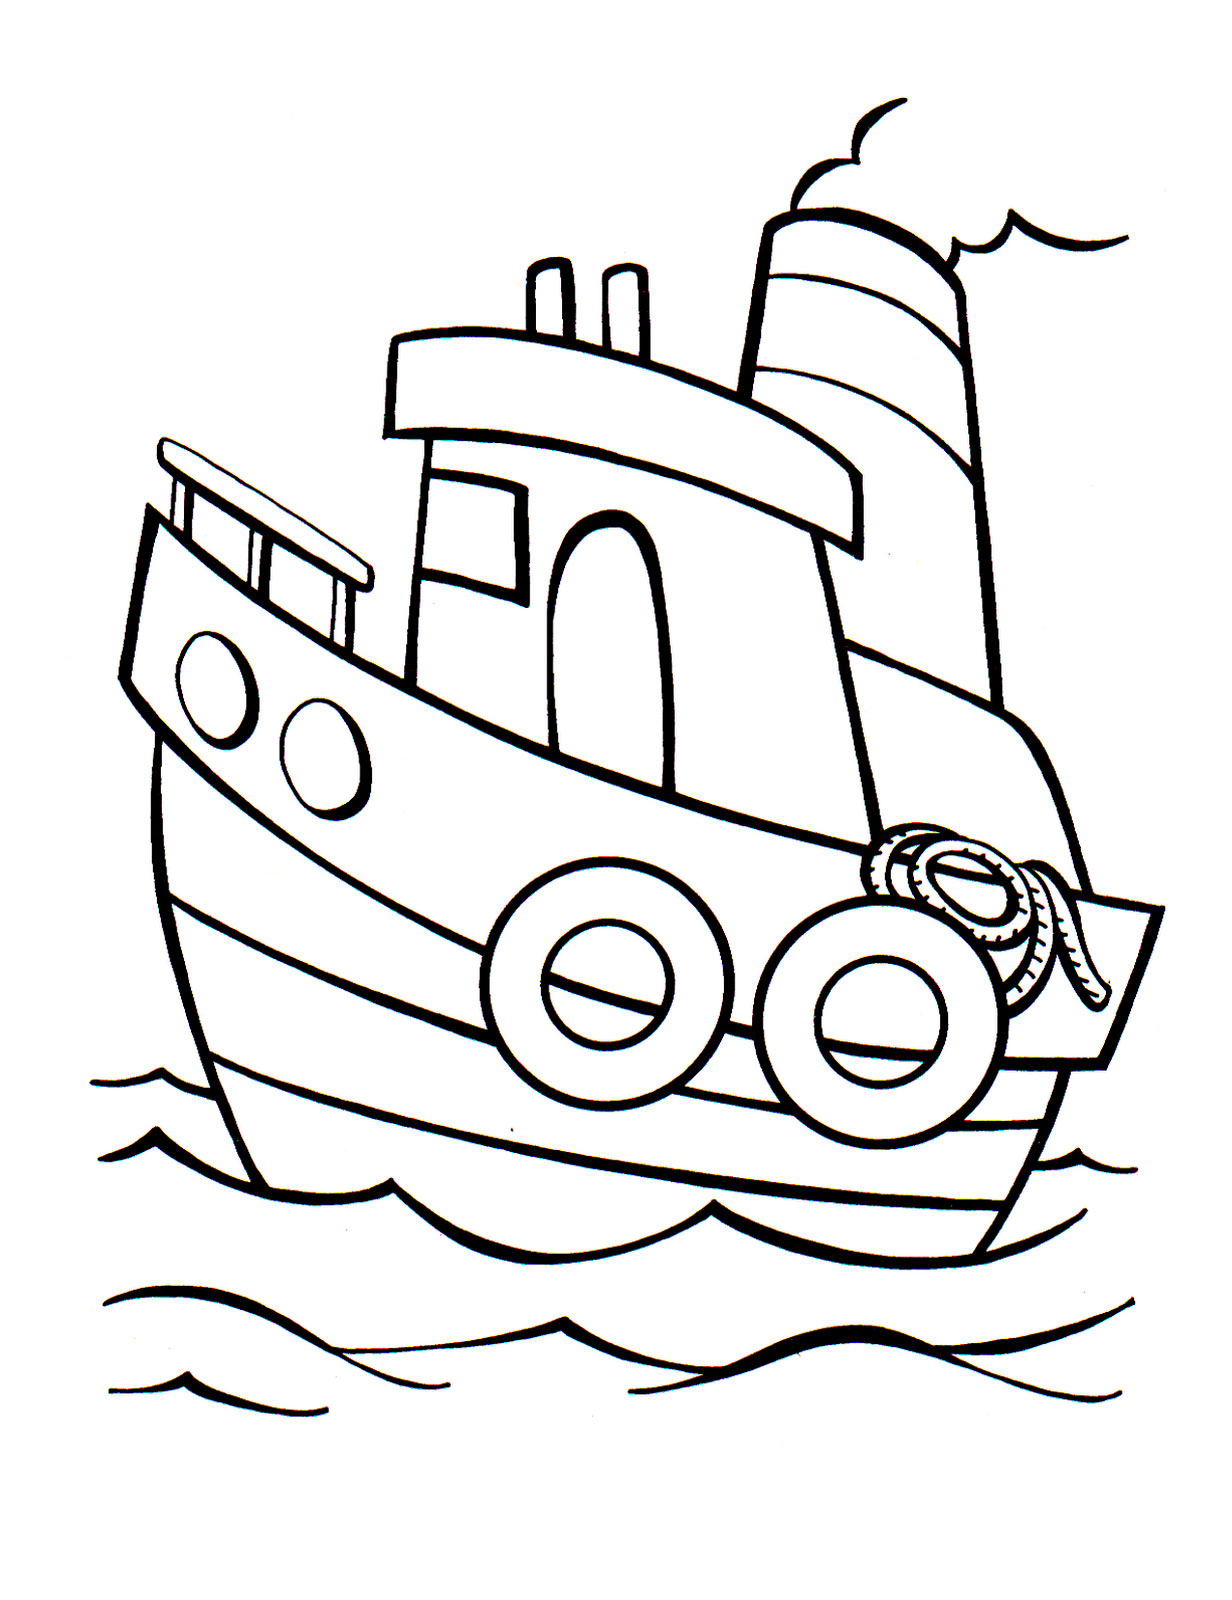 Раскраски для детей про водный транспорт. Раскраски про корабли. Раскраски про корабли. Раскраски для детей про кораблики. Скачать раскраски для малышей про водный транспорт, про корабли. Картинки для детей с корабликами.    